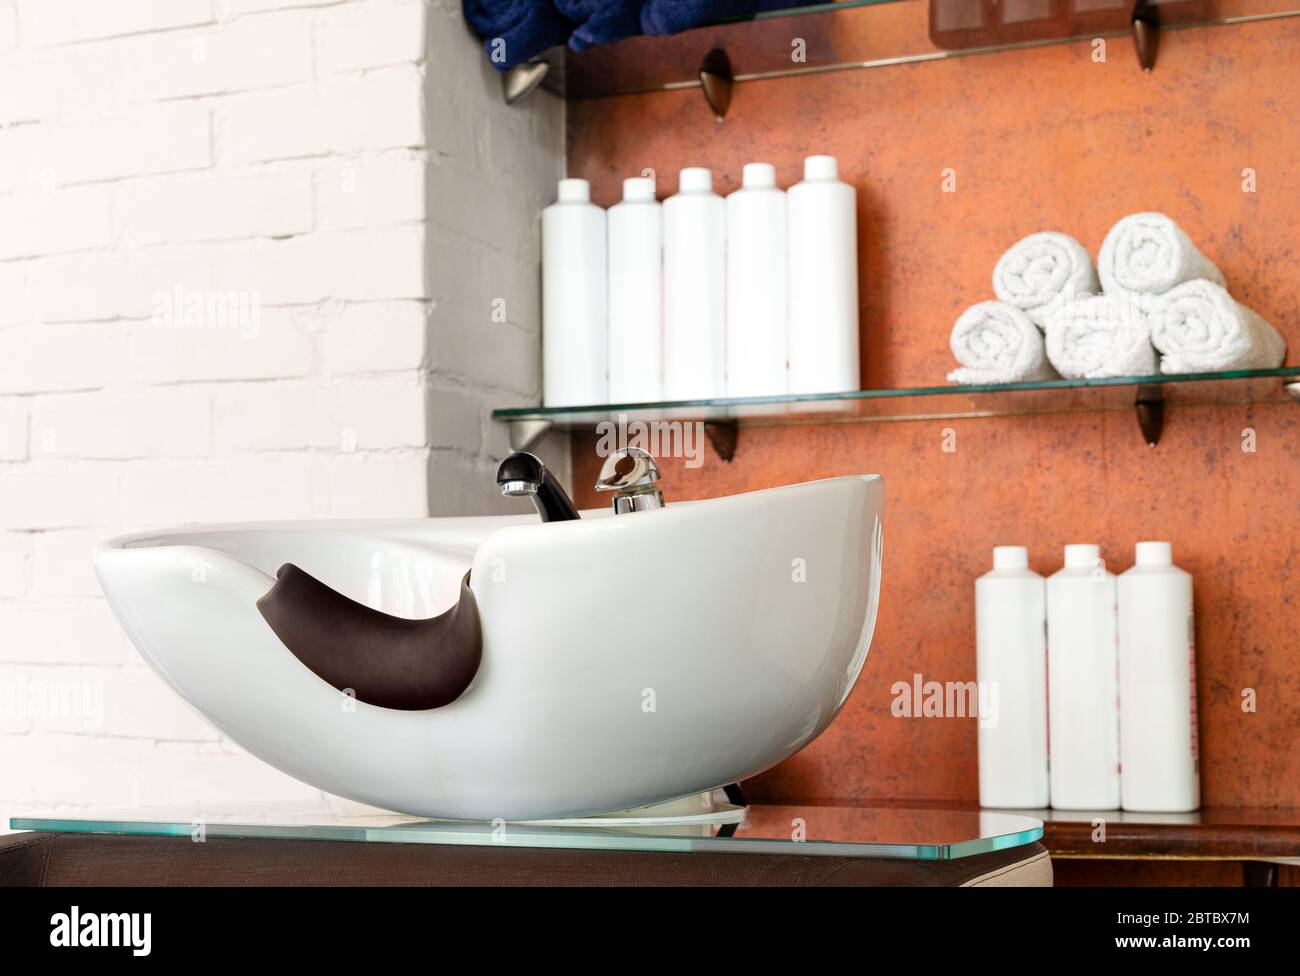 Friseurschüssel im Schönheitssalon Interieur. Waschbecken zum Waschen der Haare, Haarpflege Spa-Verfahren in Friseur, Shampoos, Handtücher. Friseur-Stylistin Stockfoto